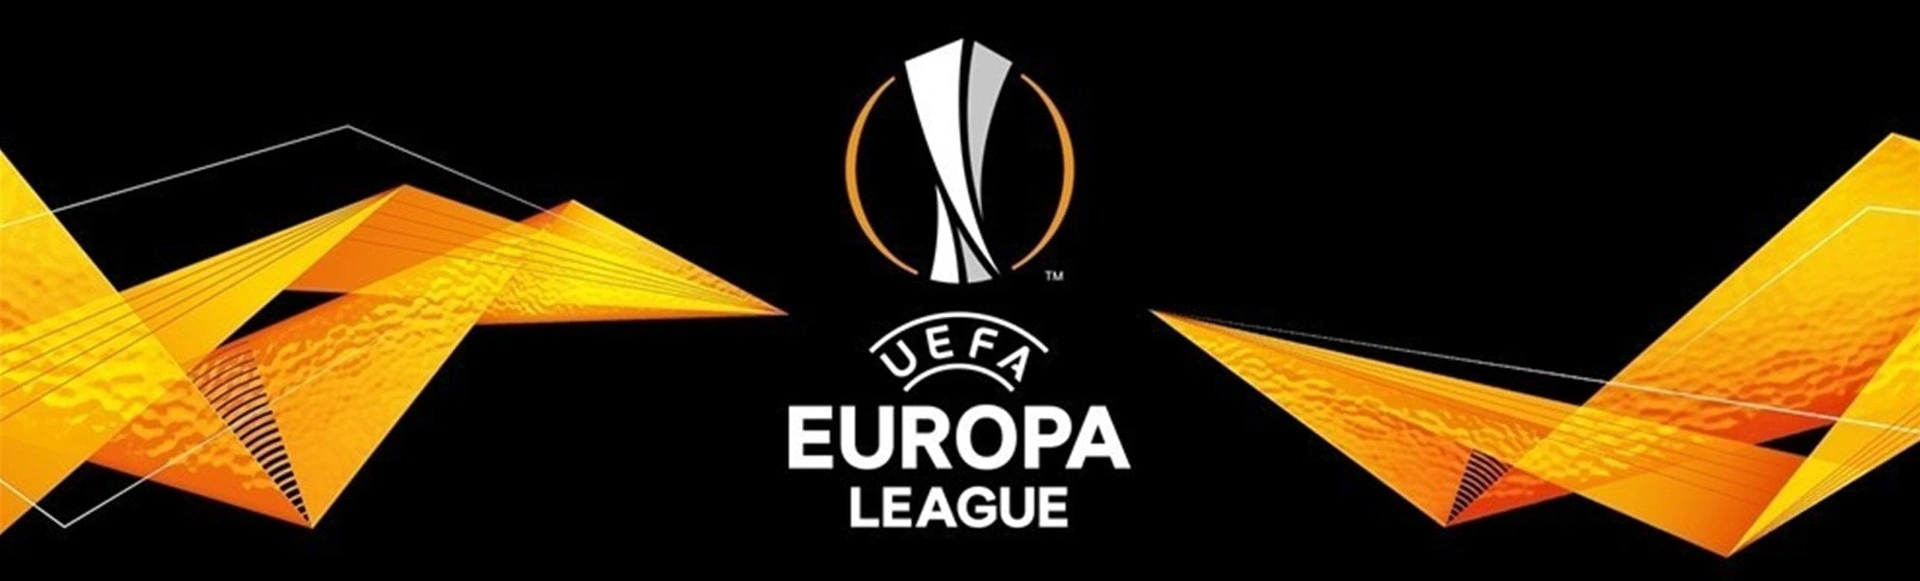 Зенит - Бетис. Лига Европы